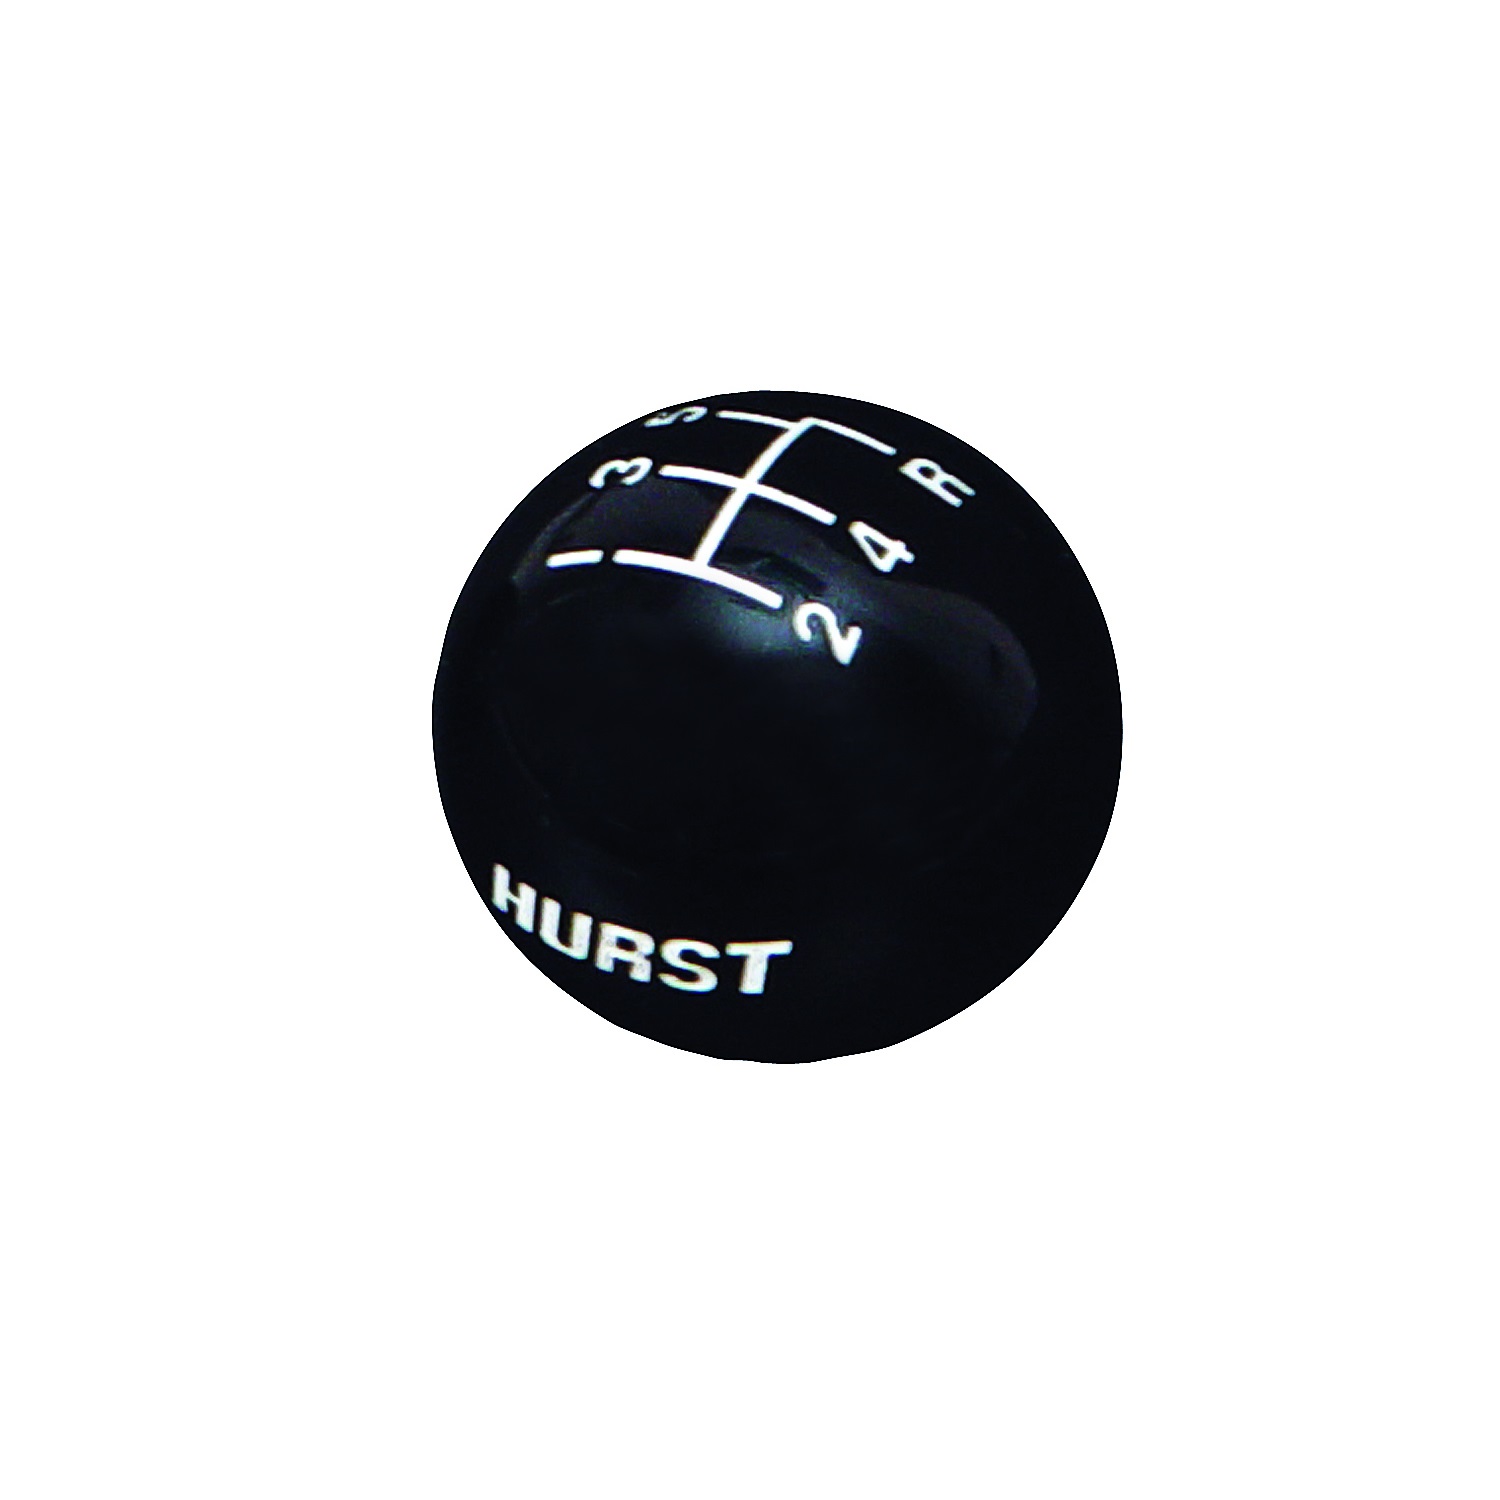 Hurst Hurst 1630125 Shifter Knob